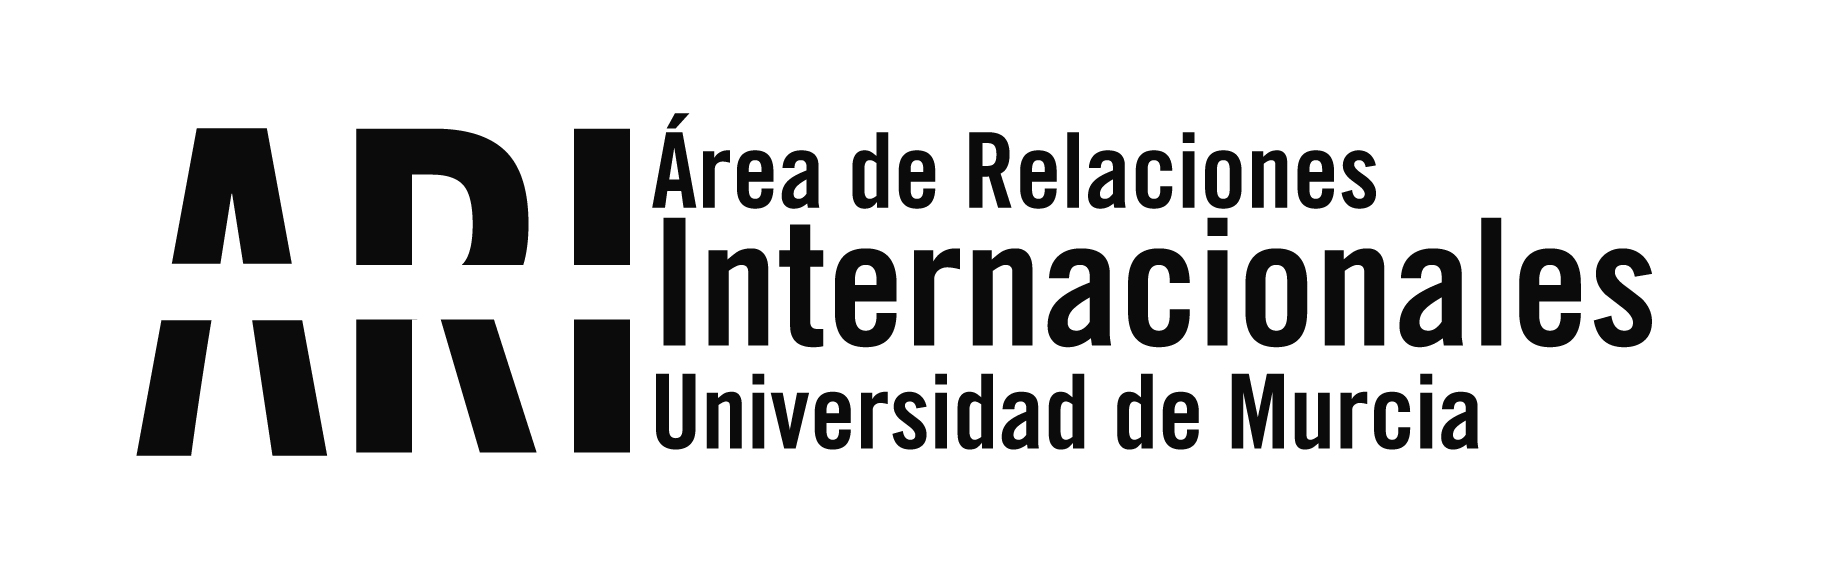 2016 - Viajes Institucionales - Área de Relaciones Internacionales